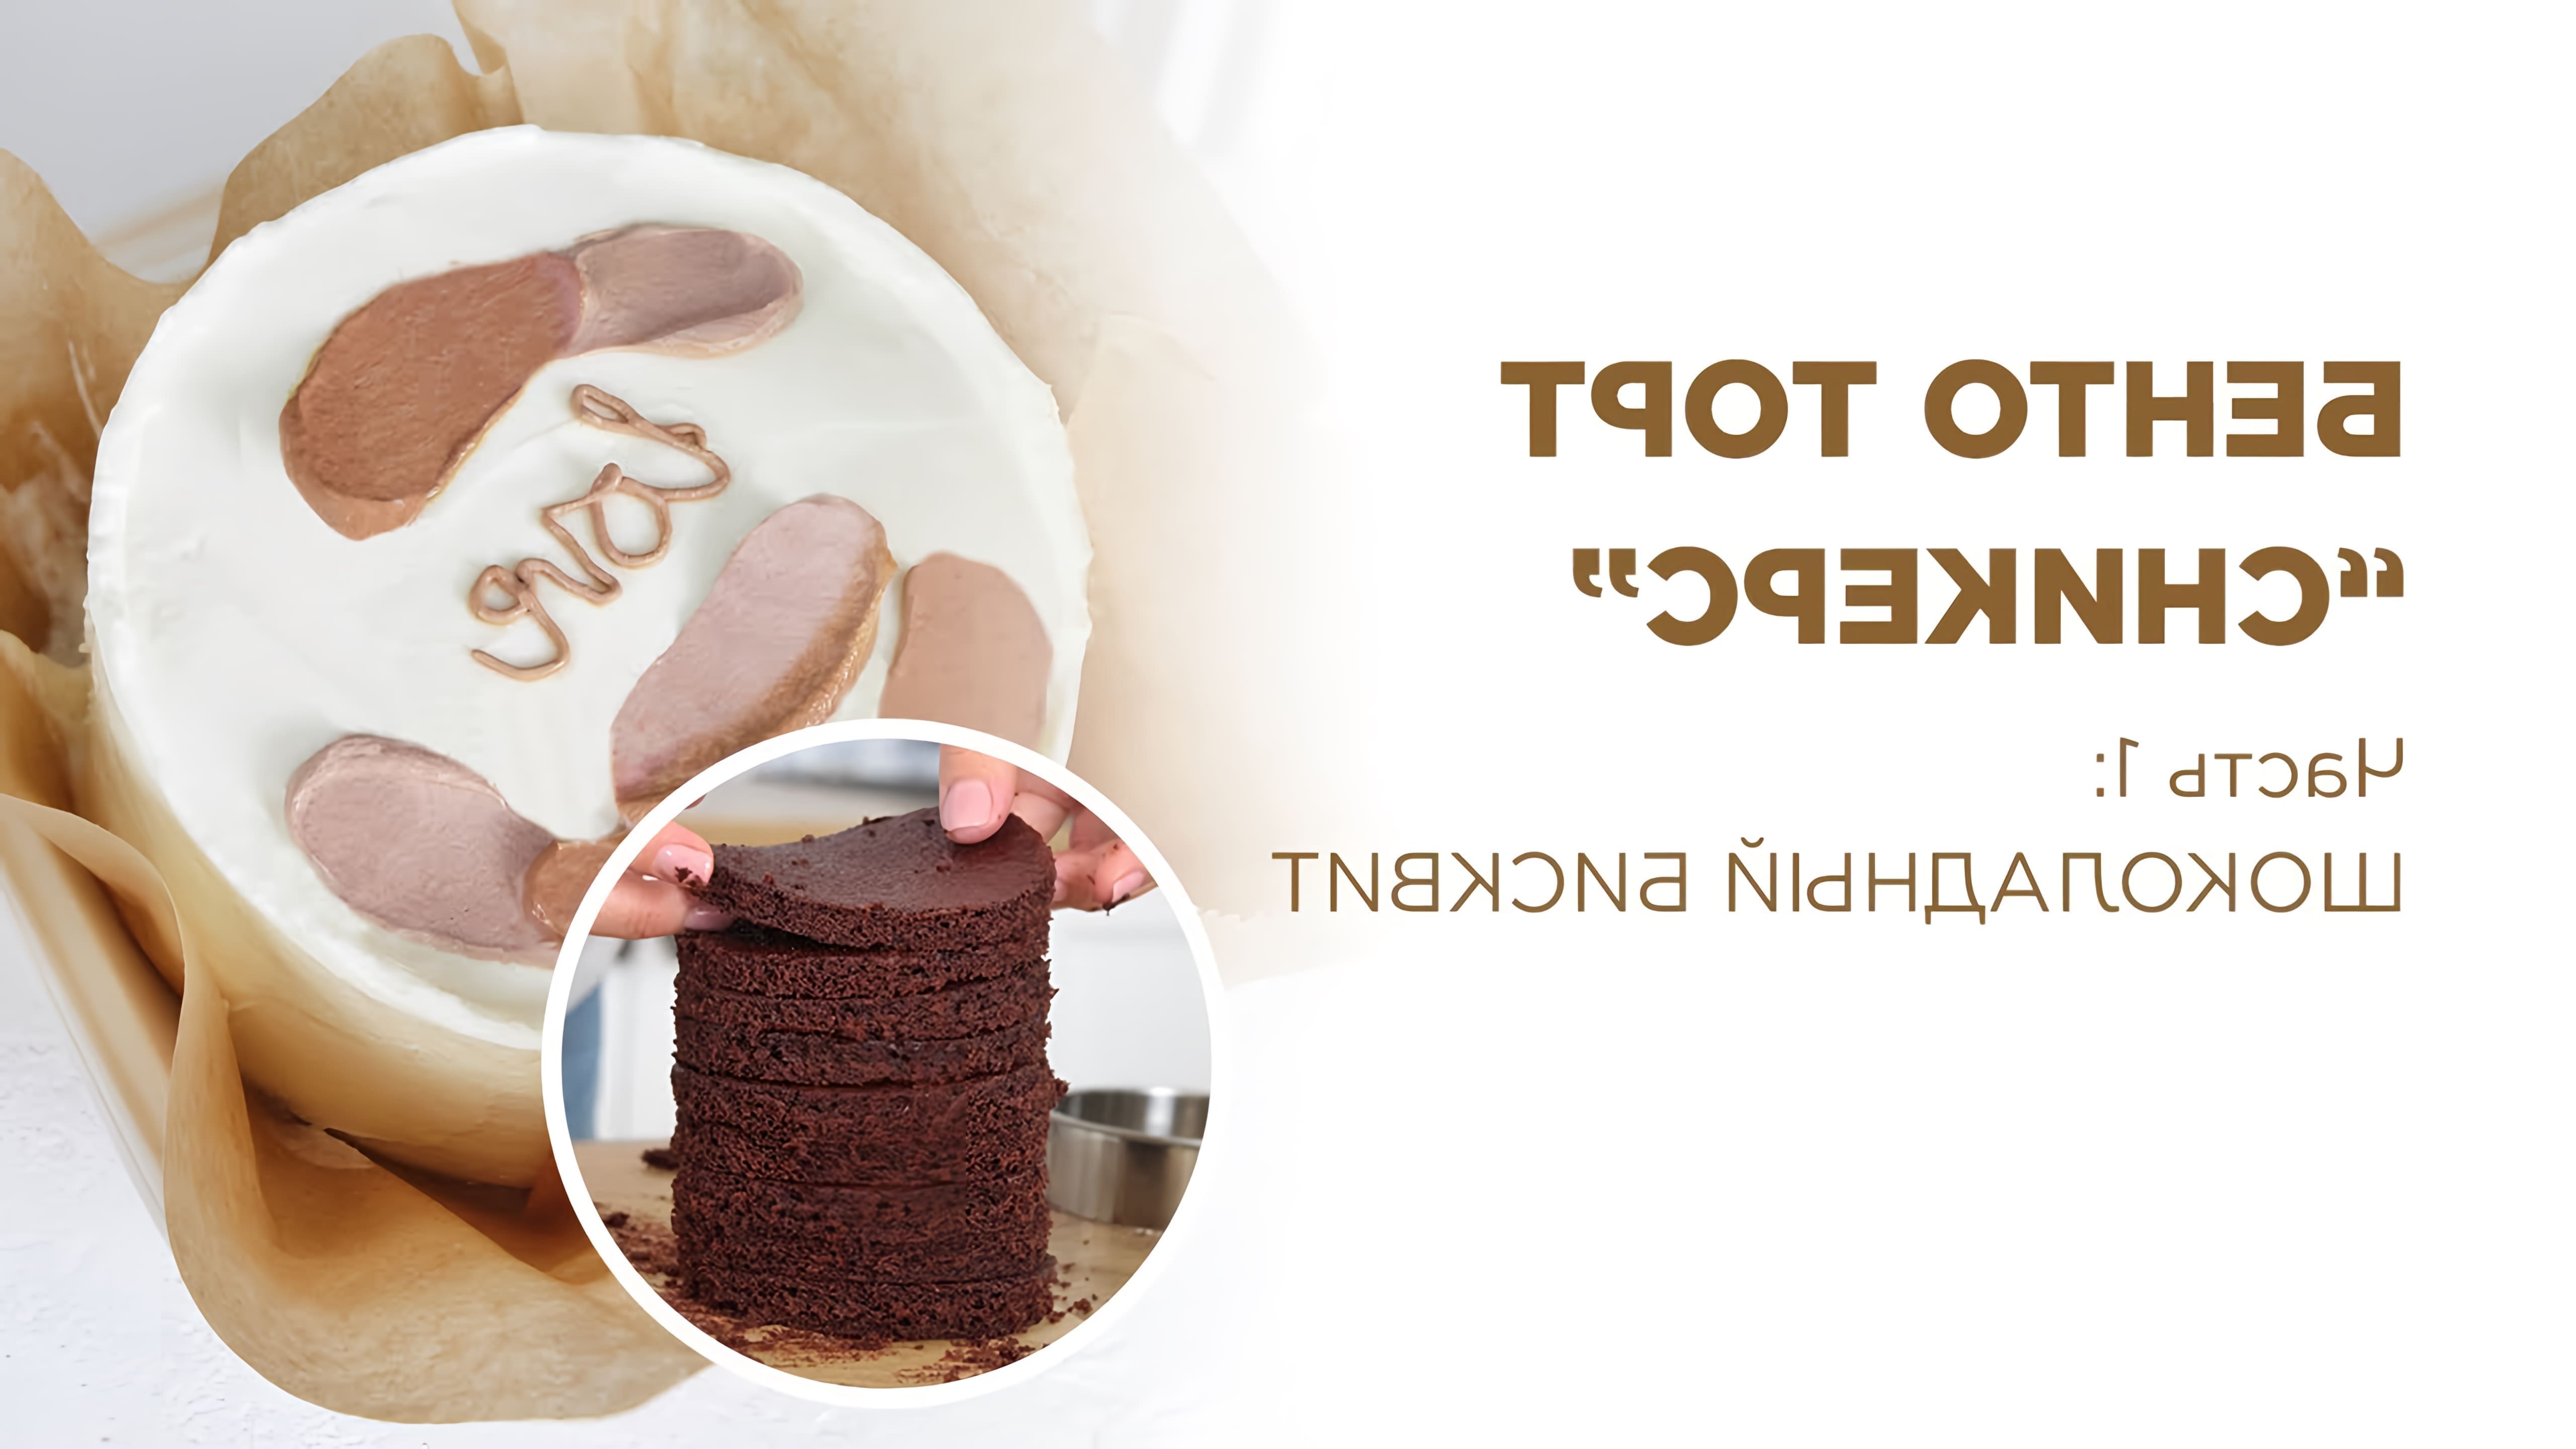 В этом видео демонстрируется процесс приготовления шоколадного бисквита для bento торта